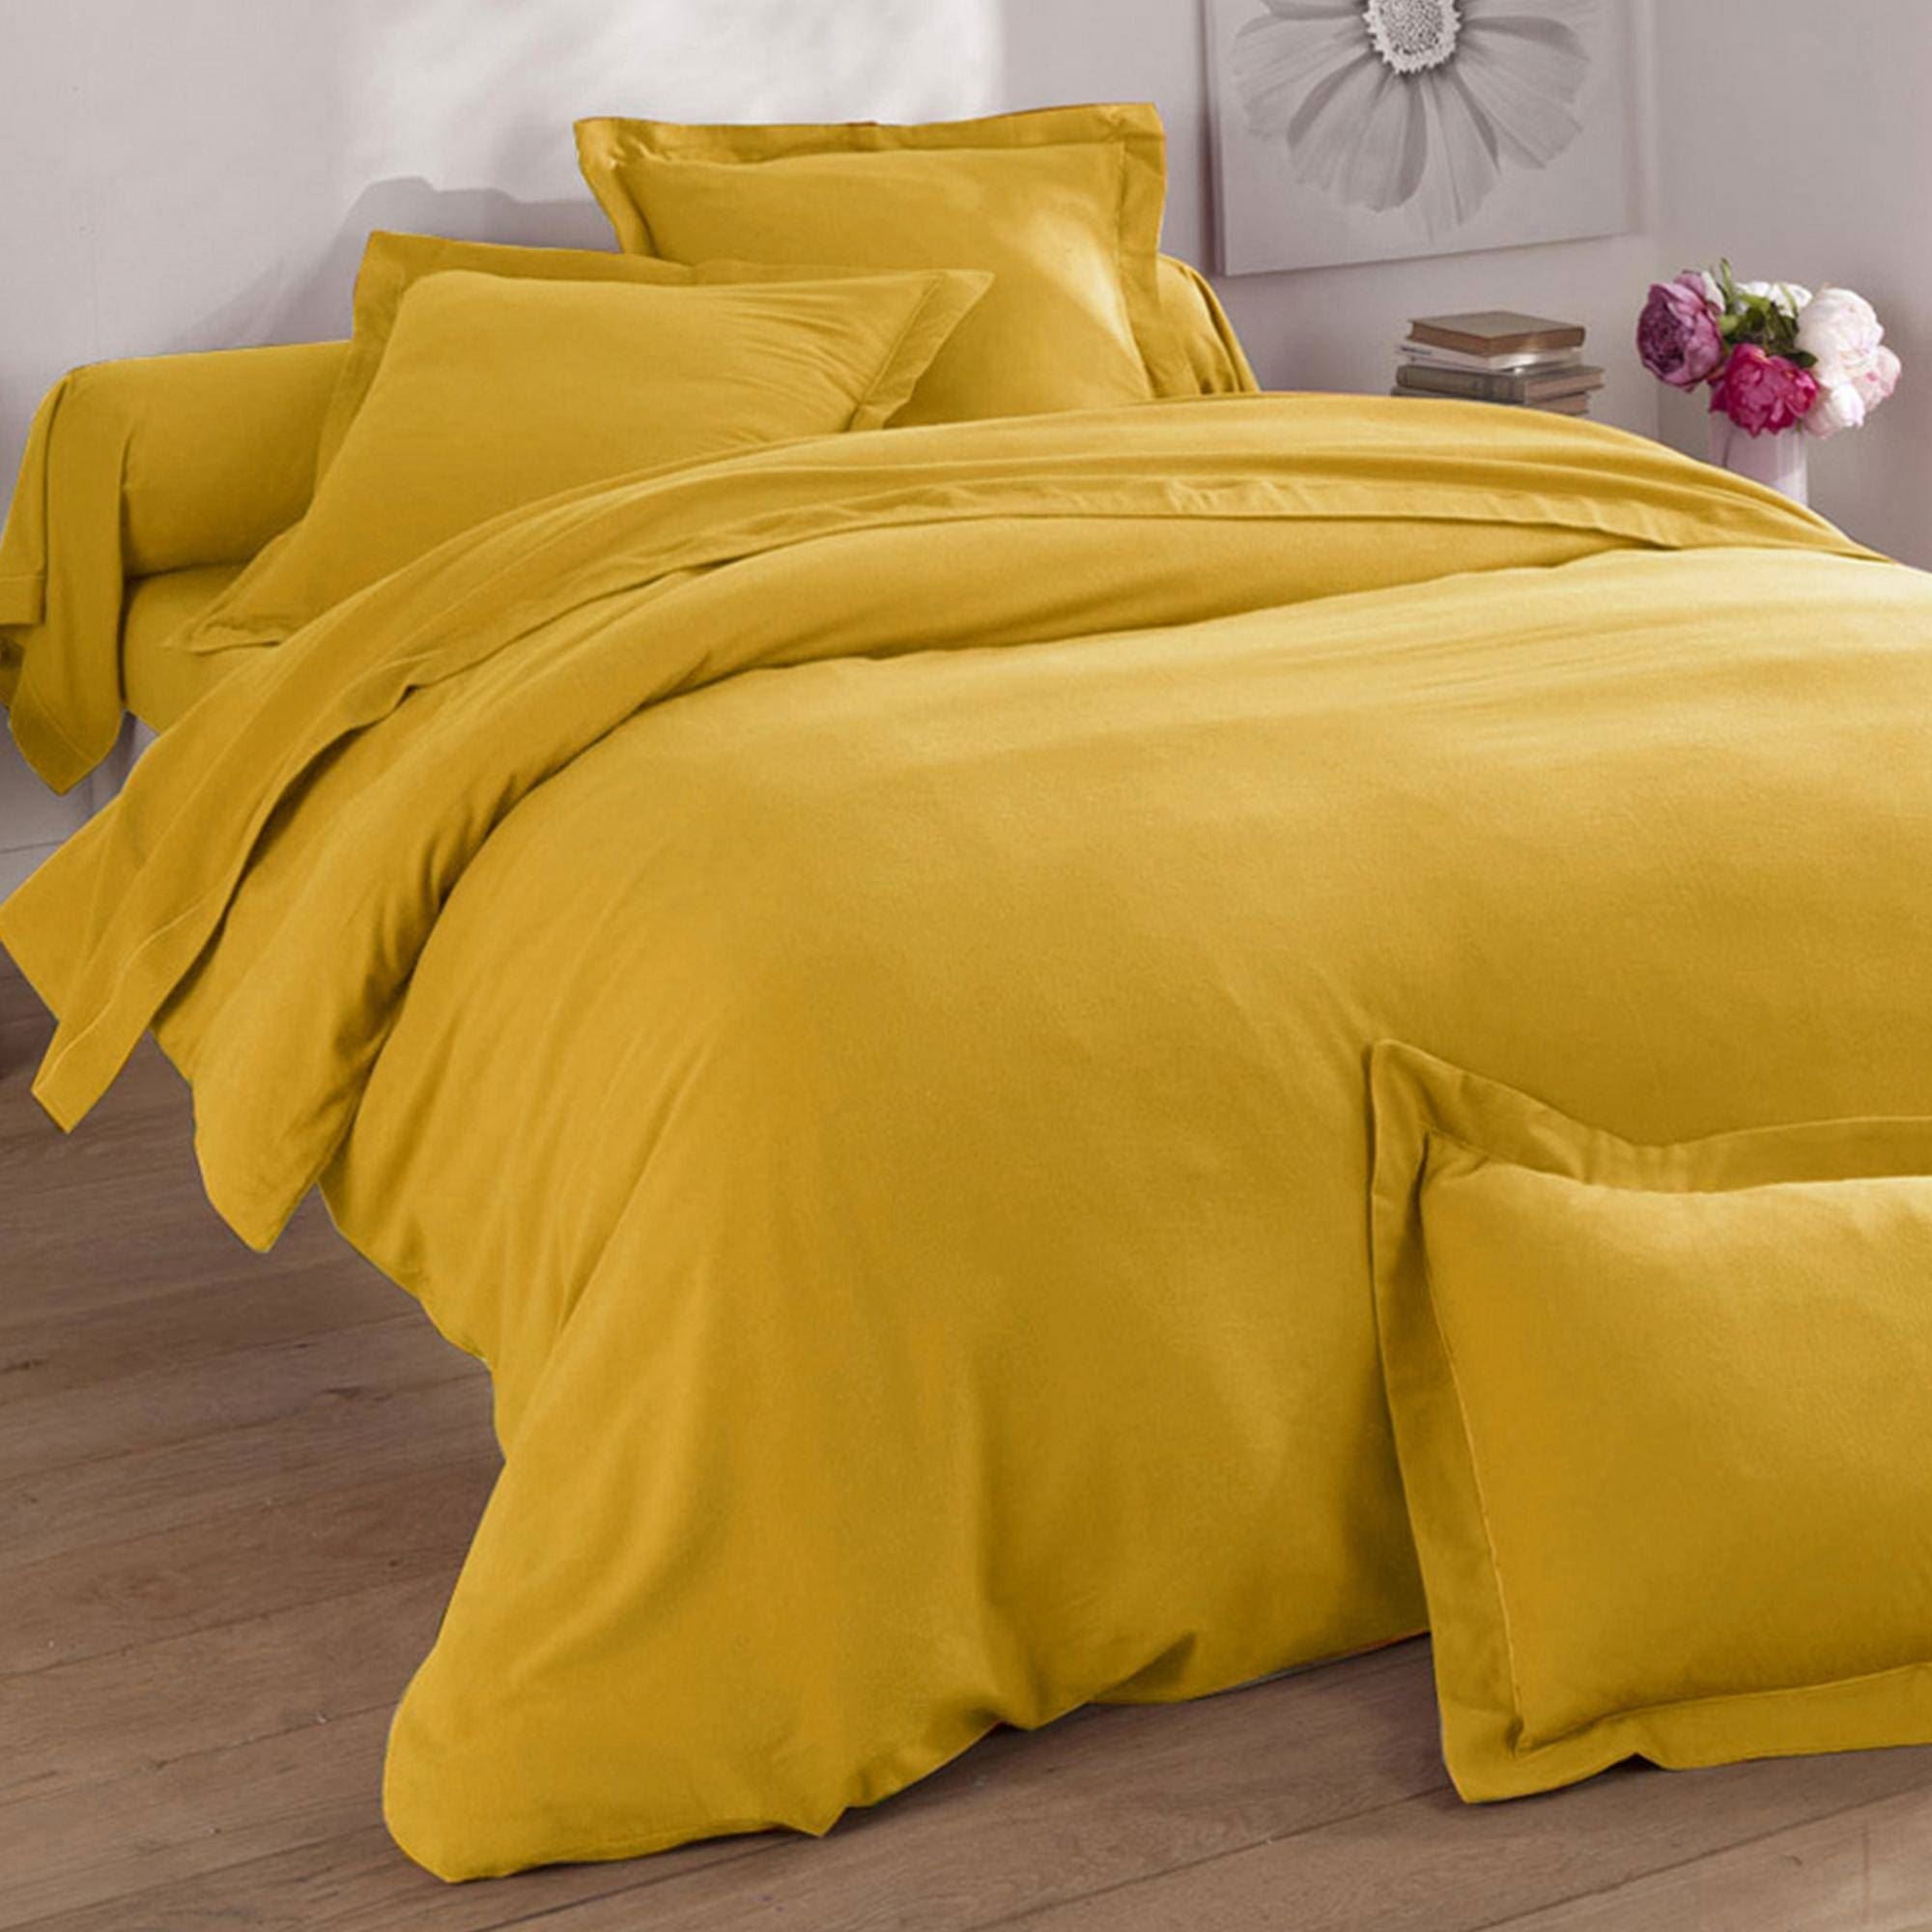 Drap-housse en coton 140 x 200 cm jaune moutarde JANBU 